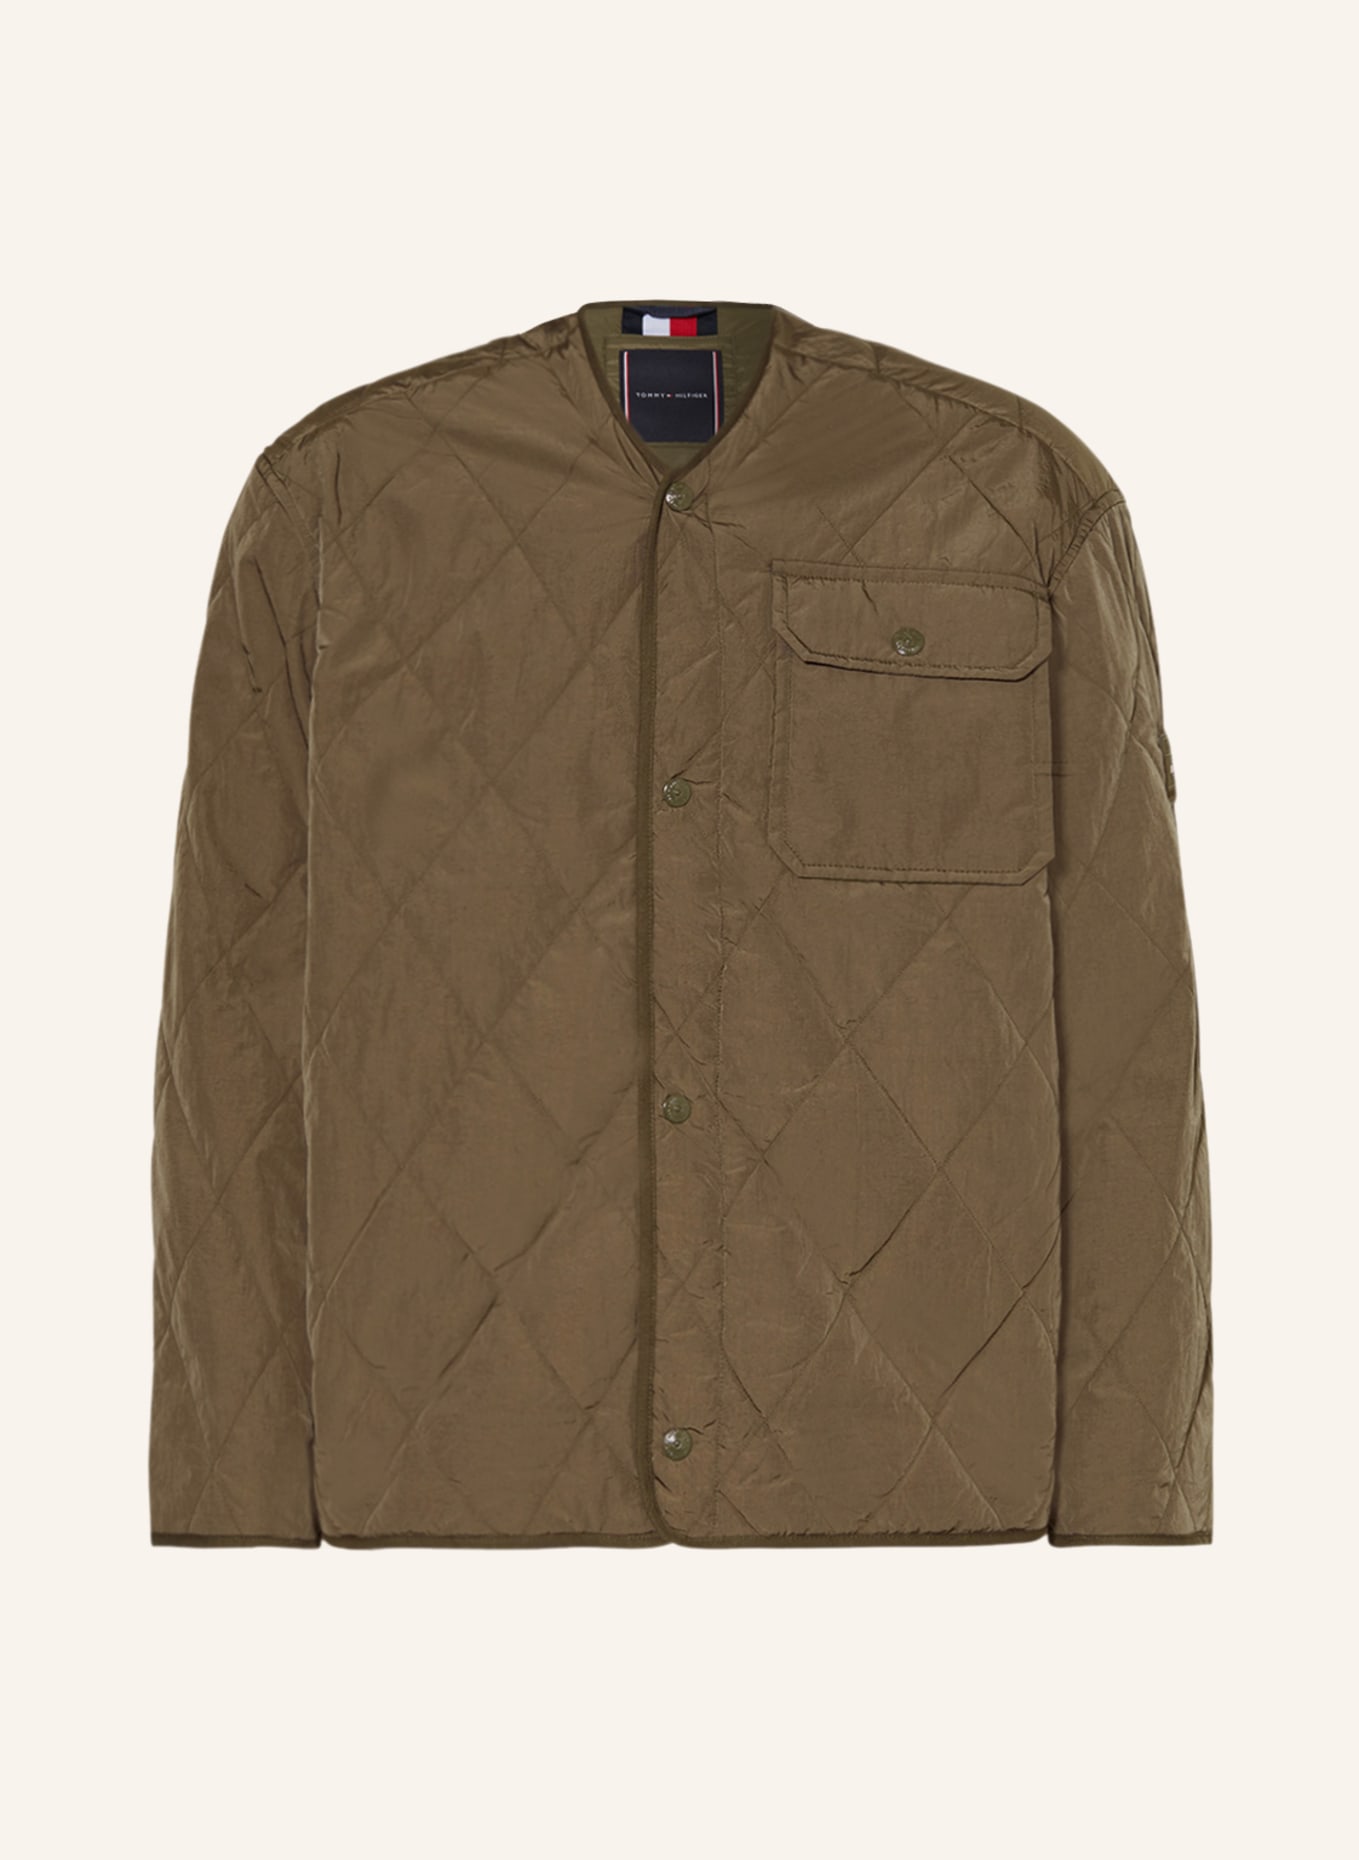 TOMMY HILFIGER Quilted jacket, Color: OLIVE (Image 1)